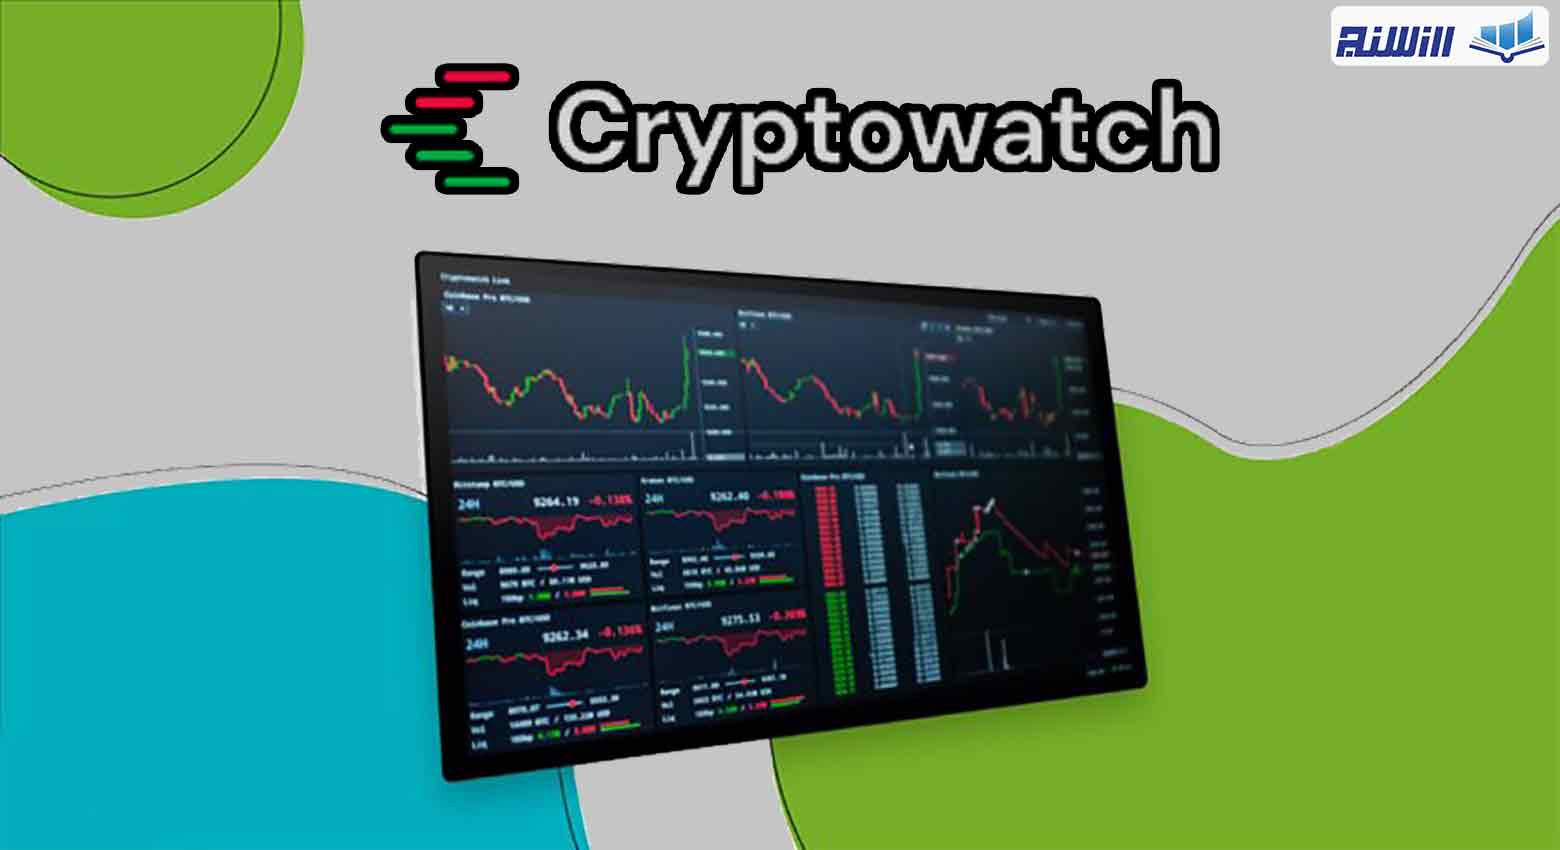 مزایای سایت cryptowatch چیست